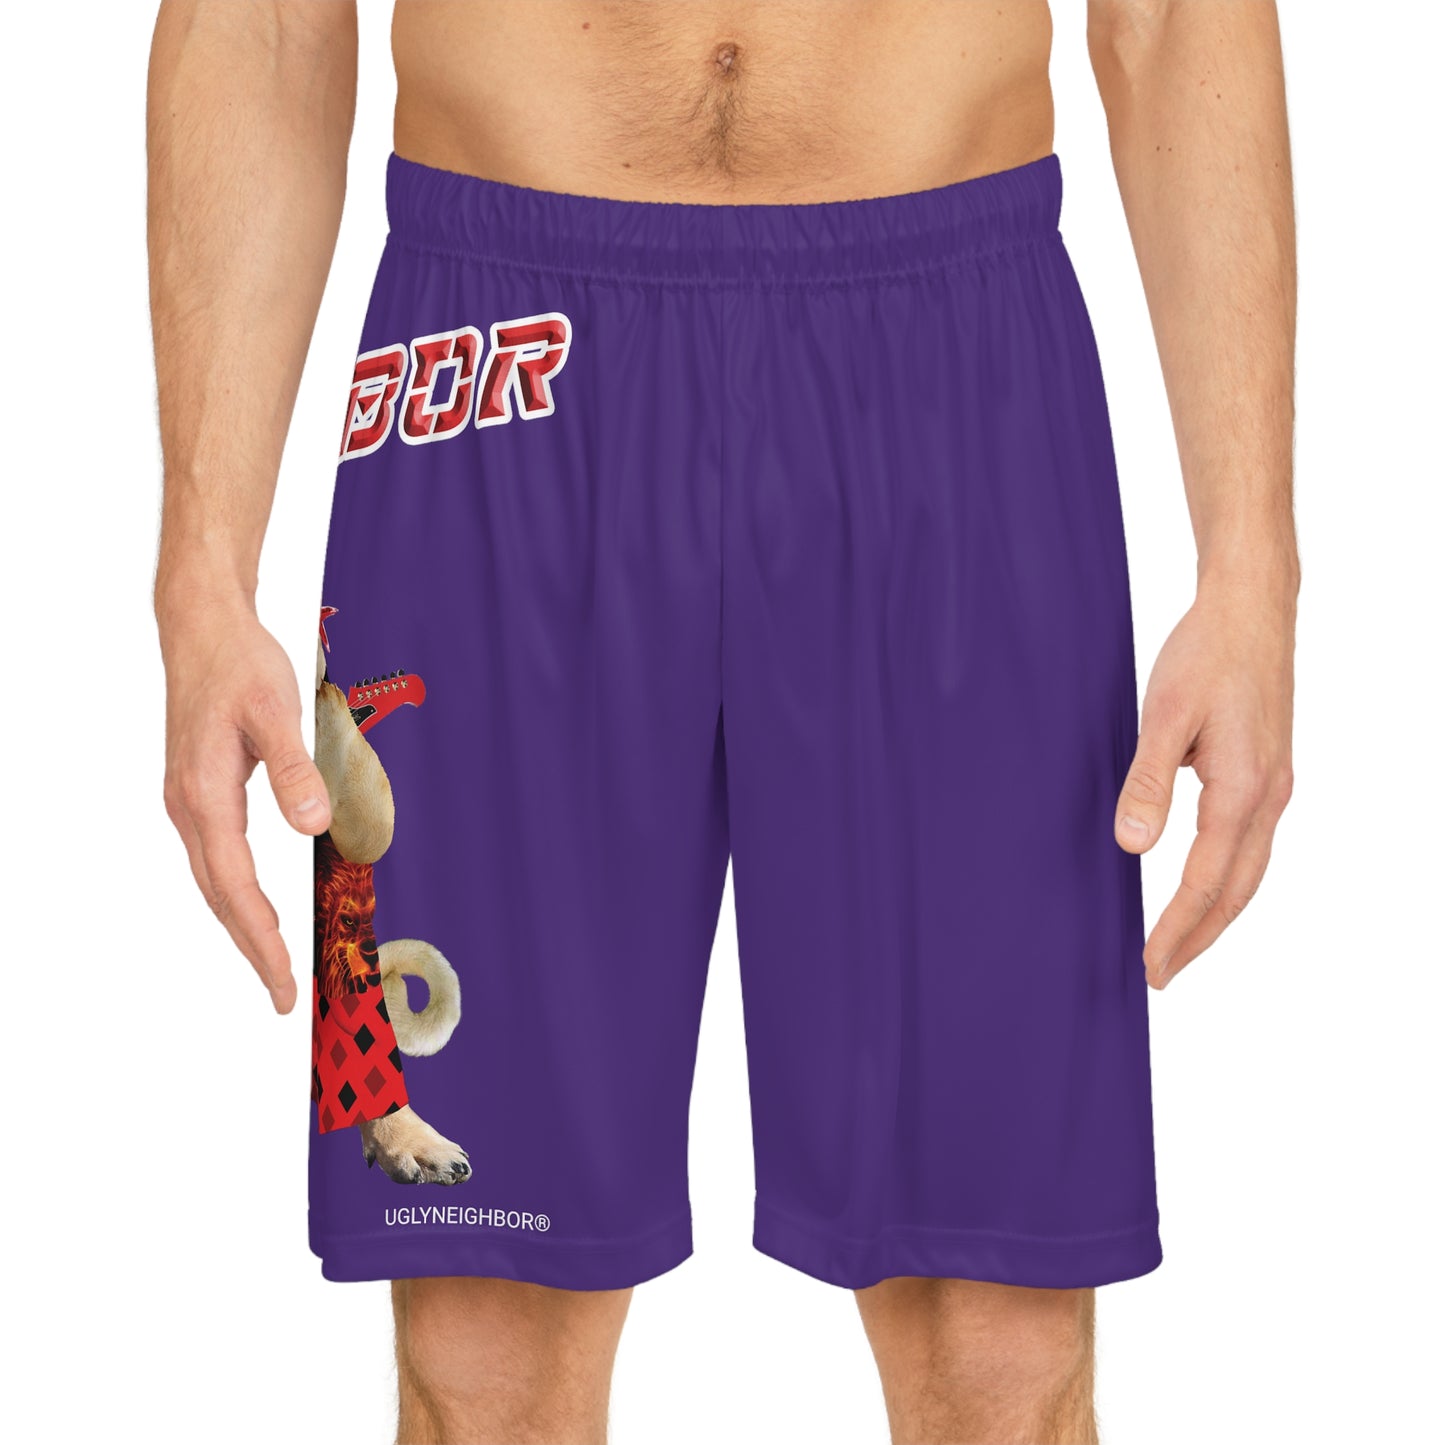 Ugly Neighbor II Basketball Shorts - Purple